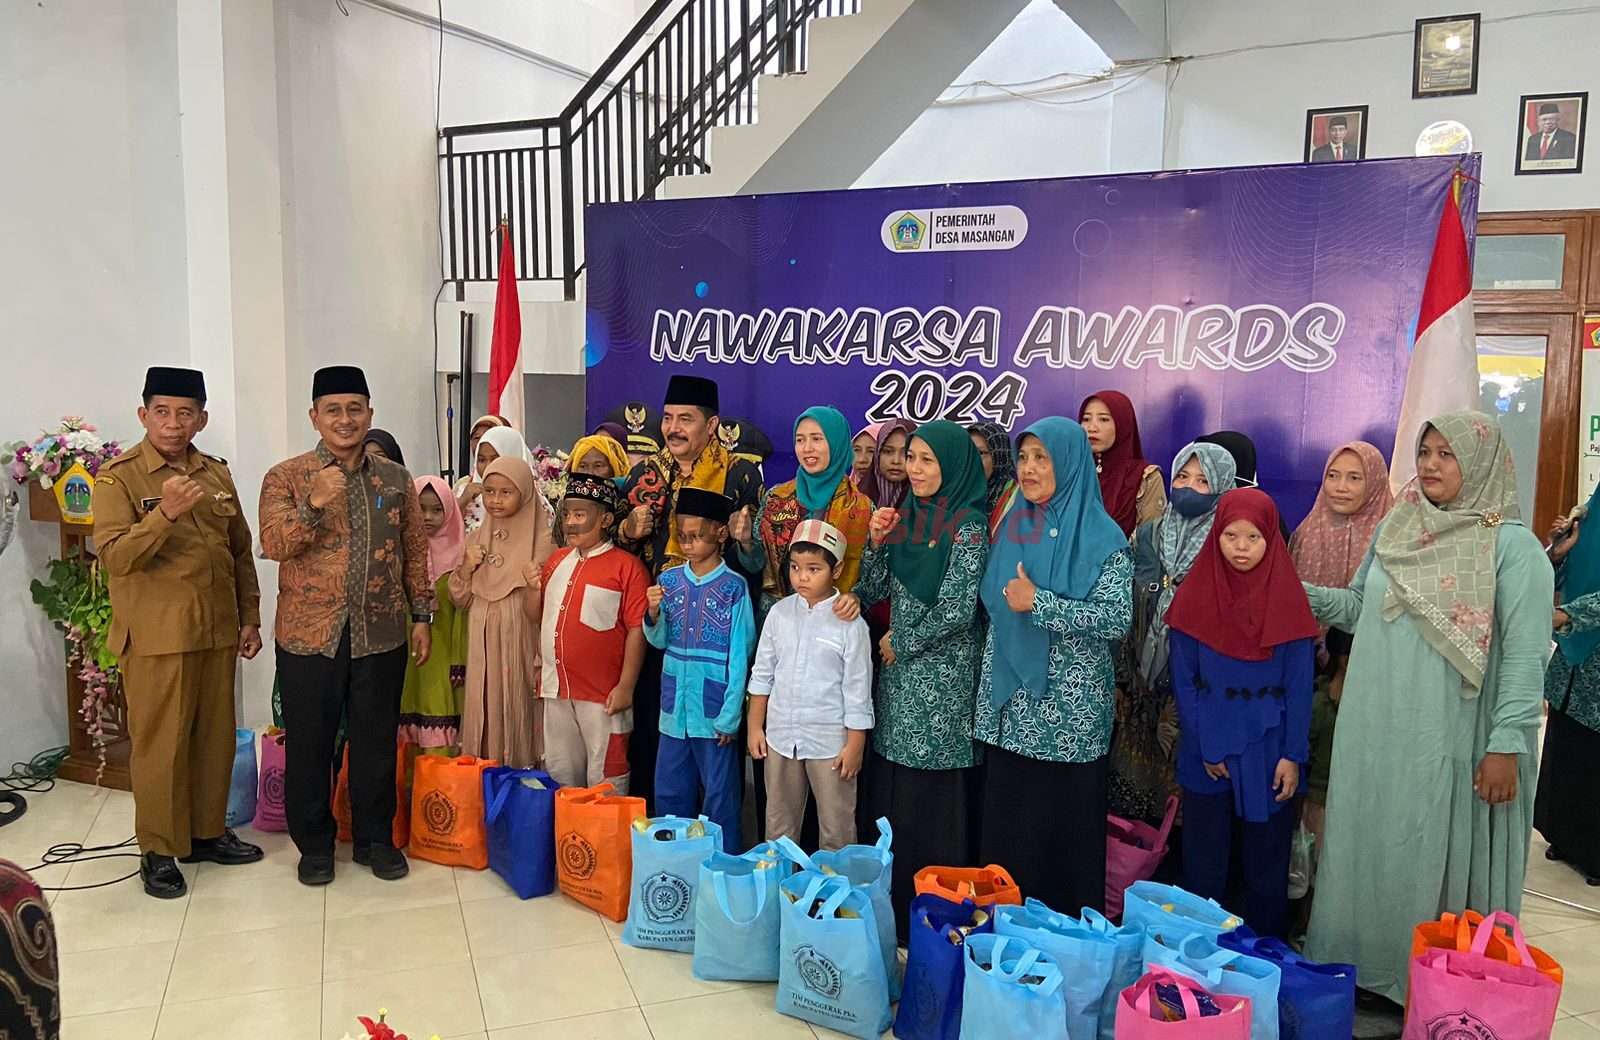 Camat Bungah Moh. Izzul Muttaqin saat menghadiri Desa Masangan Bungah berhasil masuk 9 Top Nominator Nawakarsa Award 2024, Jumat Berkah (8/3/2024).